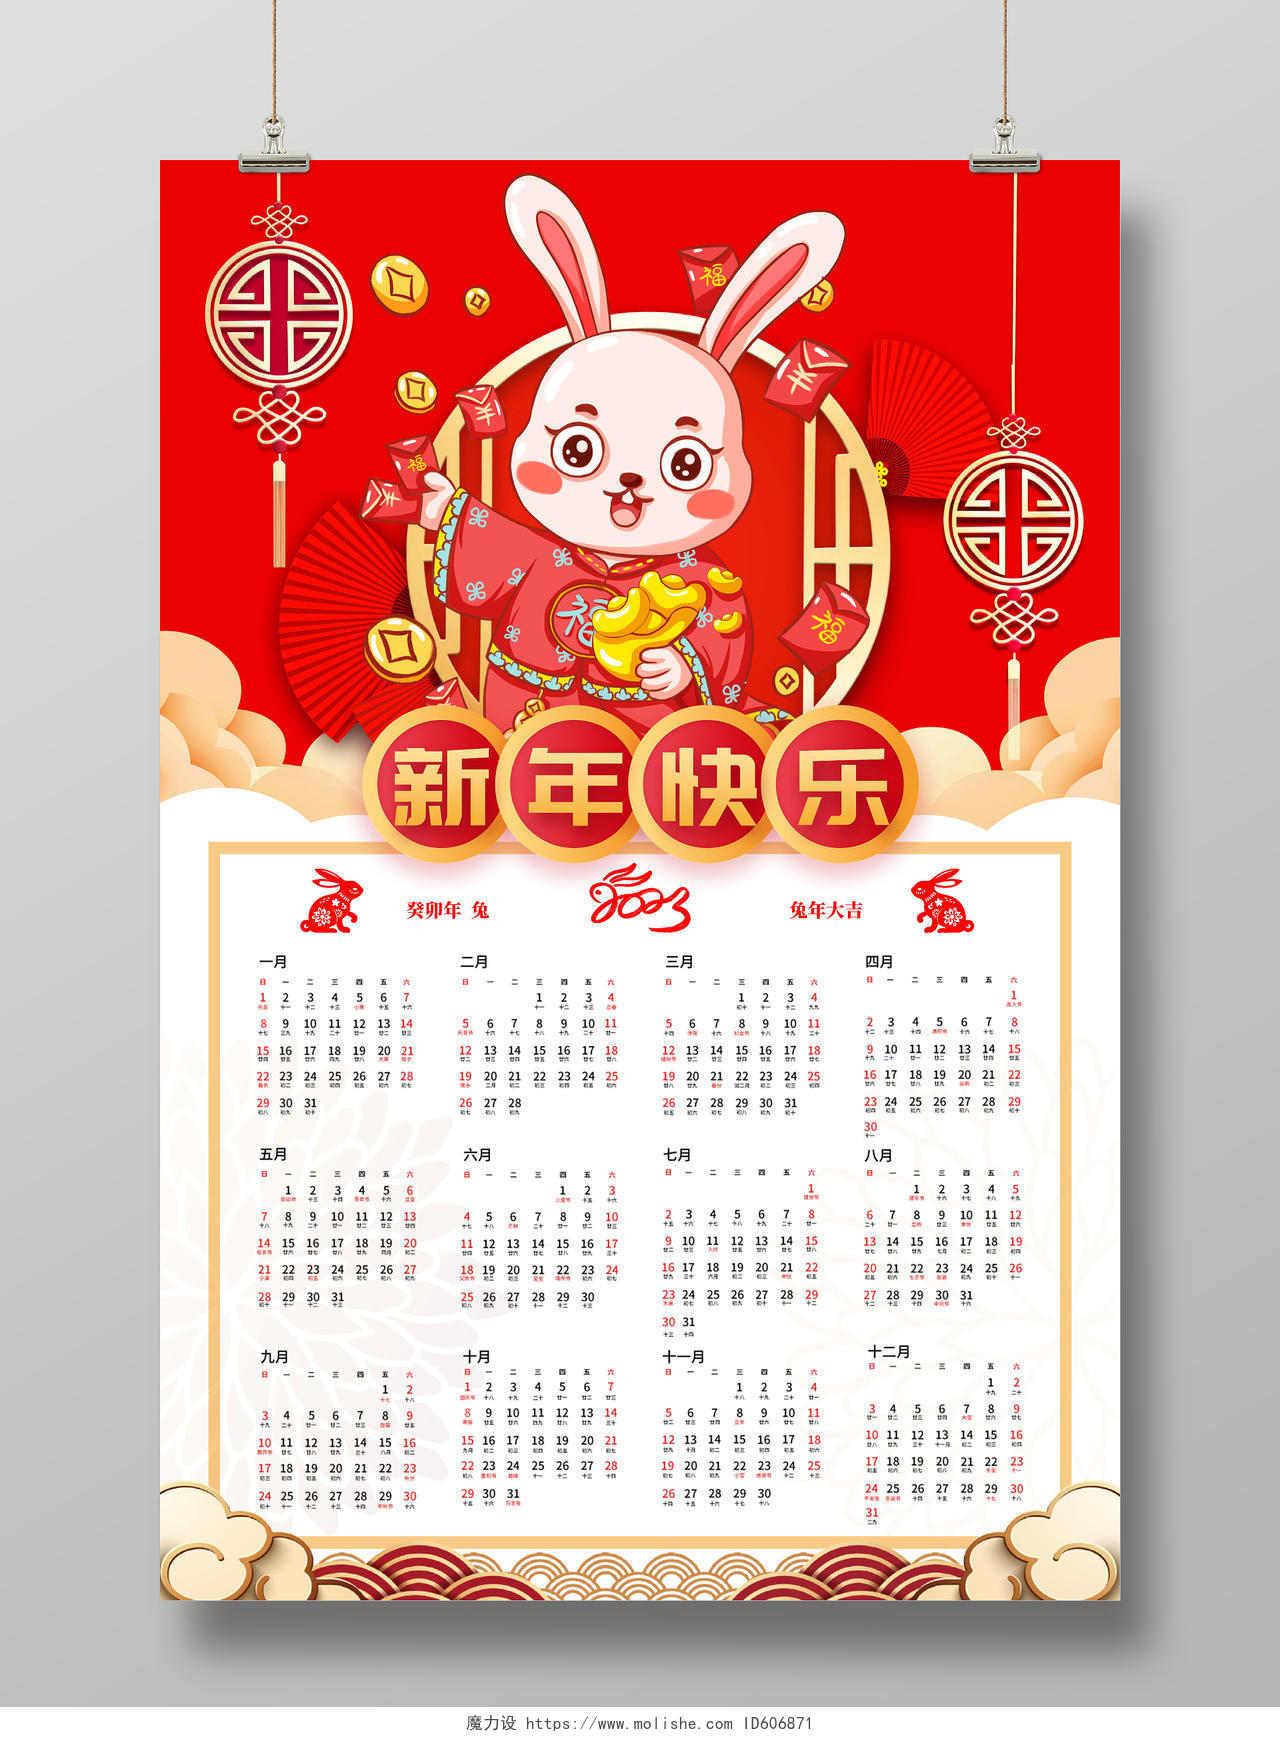 红色卡通2023年兔年日历挂历宣传海报2023日历